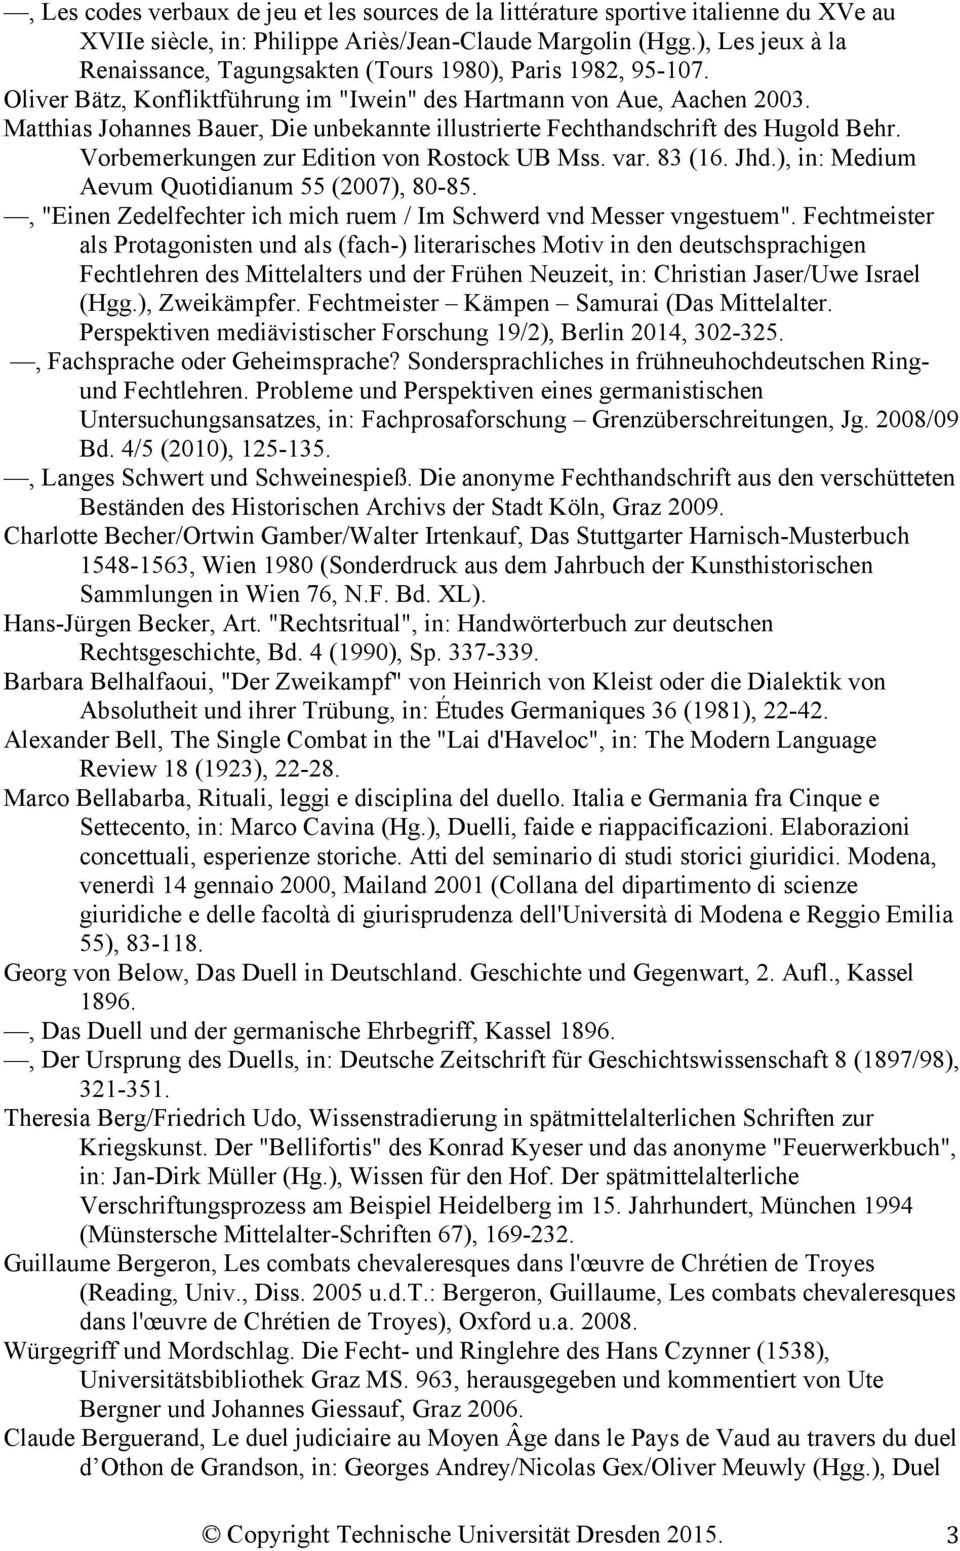 Matthias Johannes Bauer, Die unbekannte illustrierte Fechthandschrift des Hugold Behr. Vorbemerkungen zur Edition von Rostock UB Mss. var. 83 (16. Jhd.), in: Medium Aevum Quotidianum 55 (2007), 80-85.